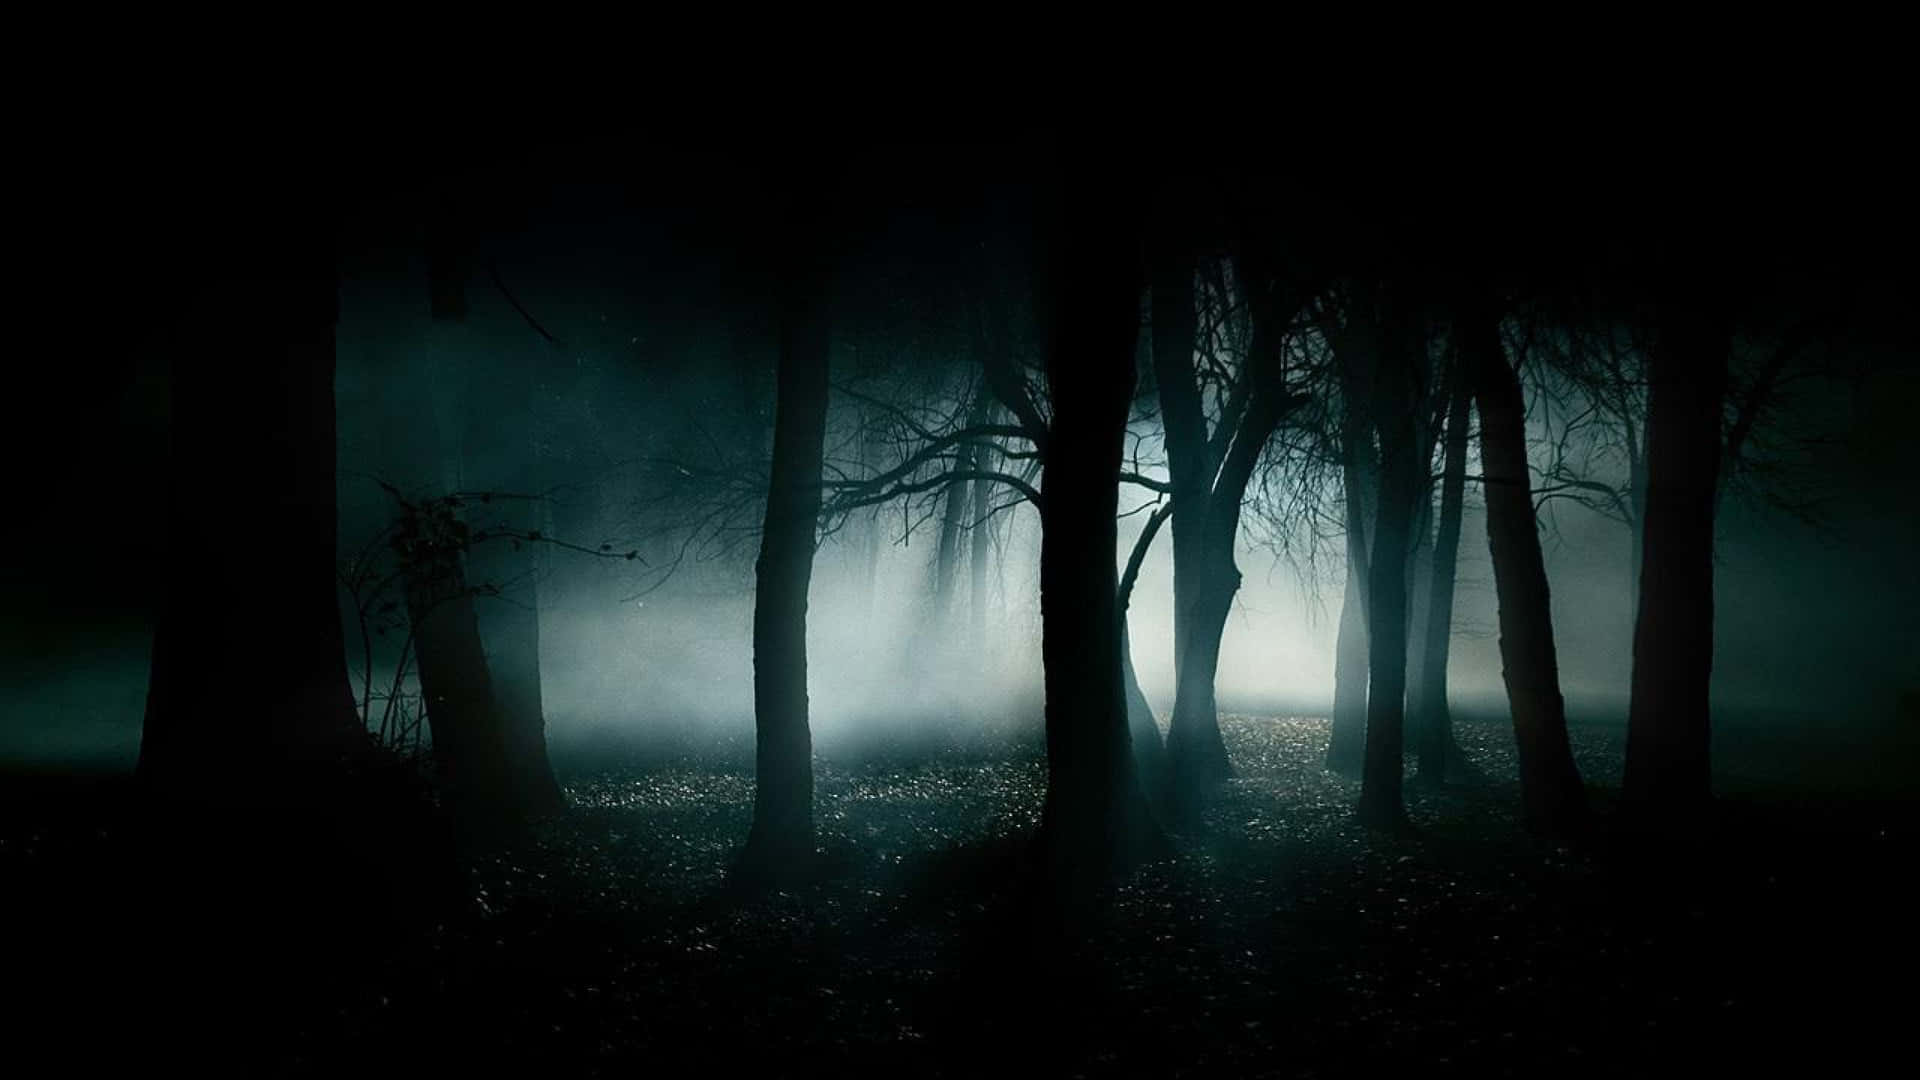 Imagende Un Bosque Oscuro Y Brumoso.